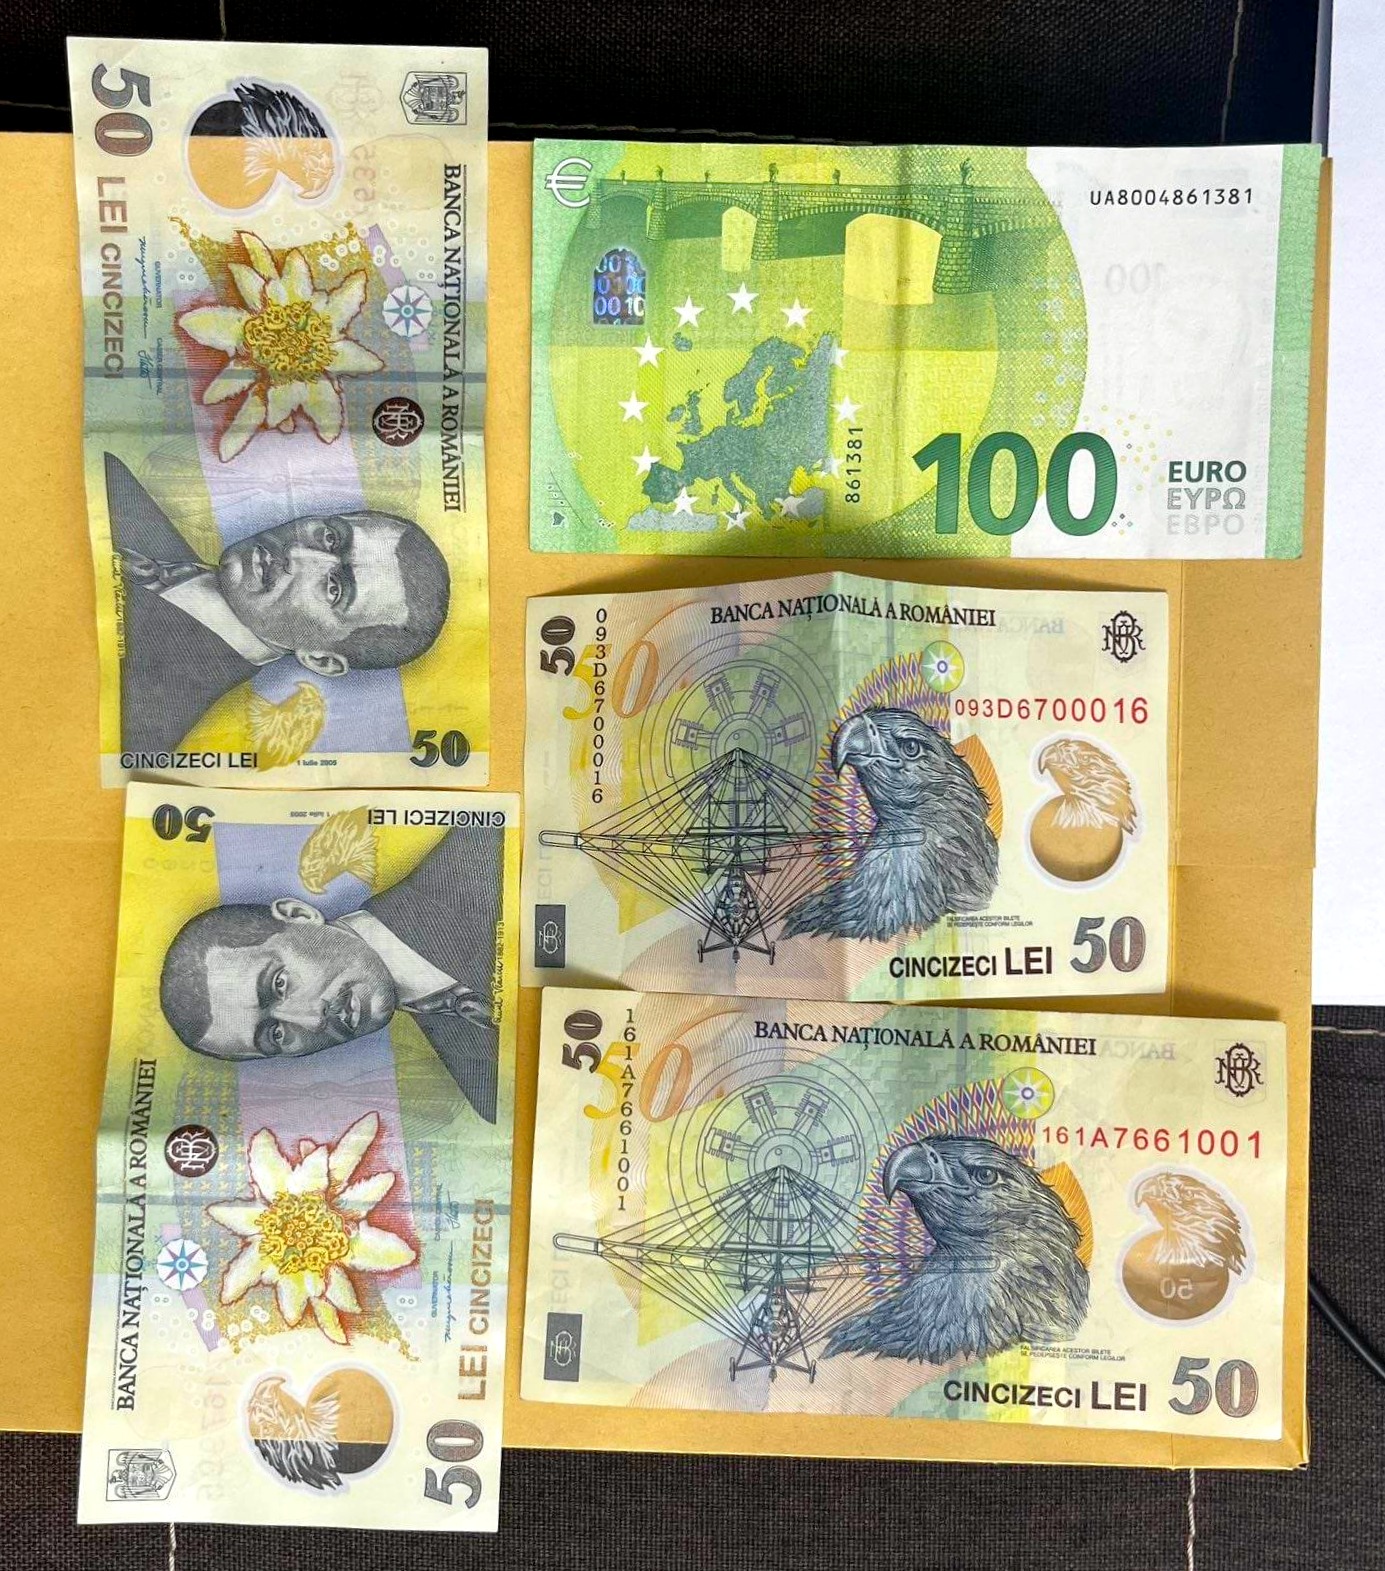 FOTO Mii de lei, ruble și dolari au fost depistați acasă la doi brokeri vamali. Percheziții și rețineri la nordul Moldovei